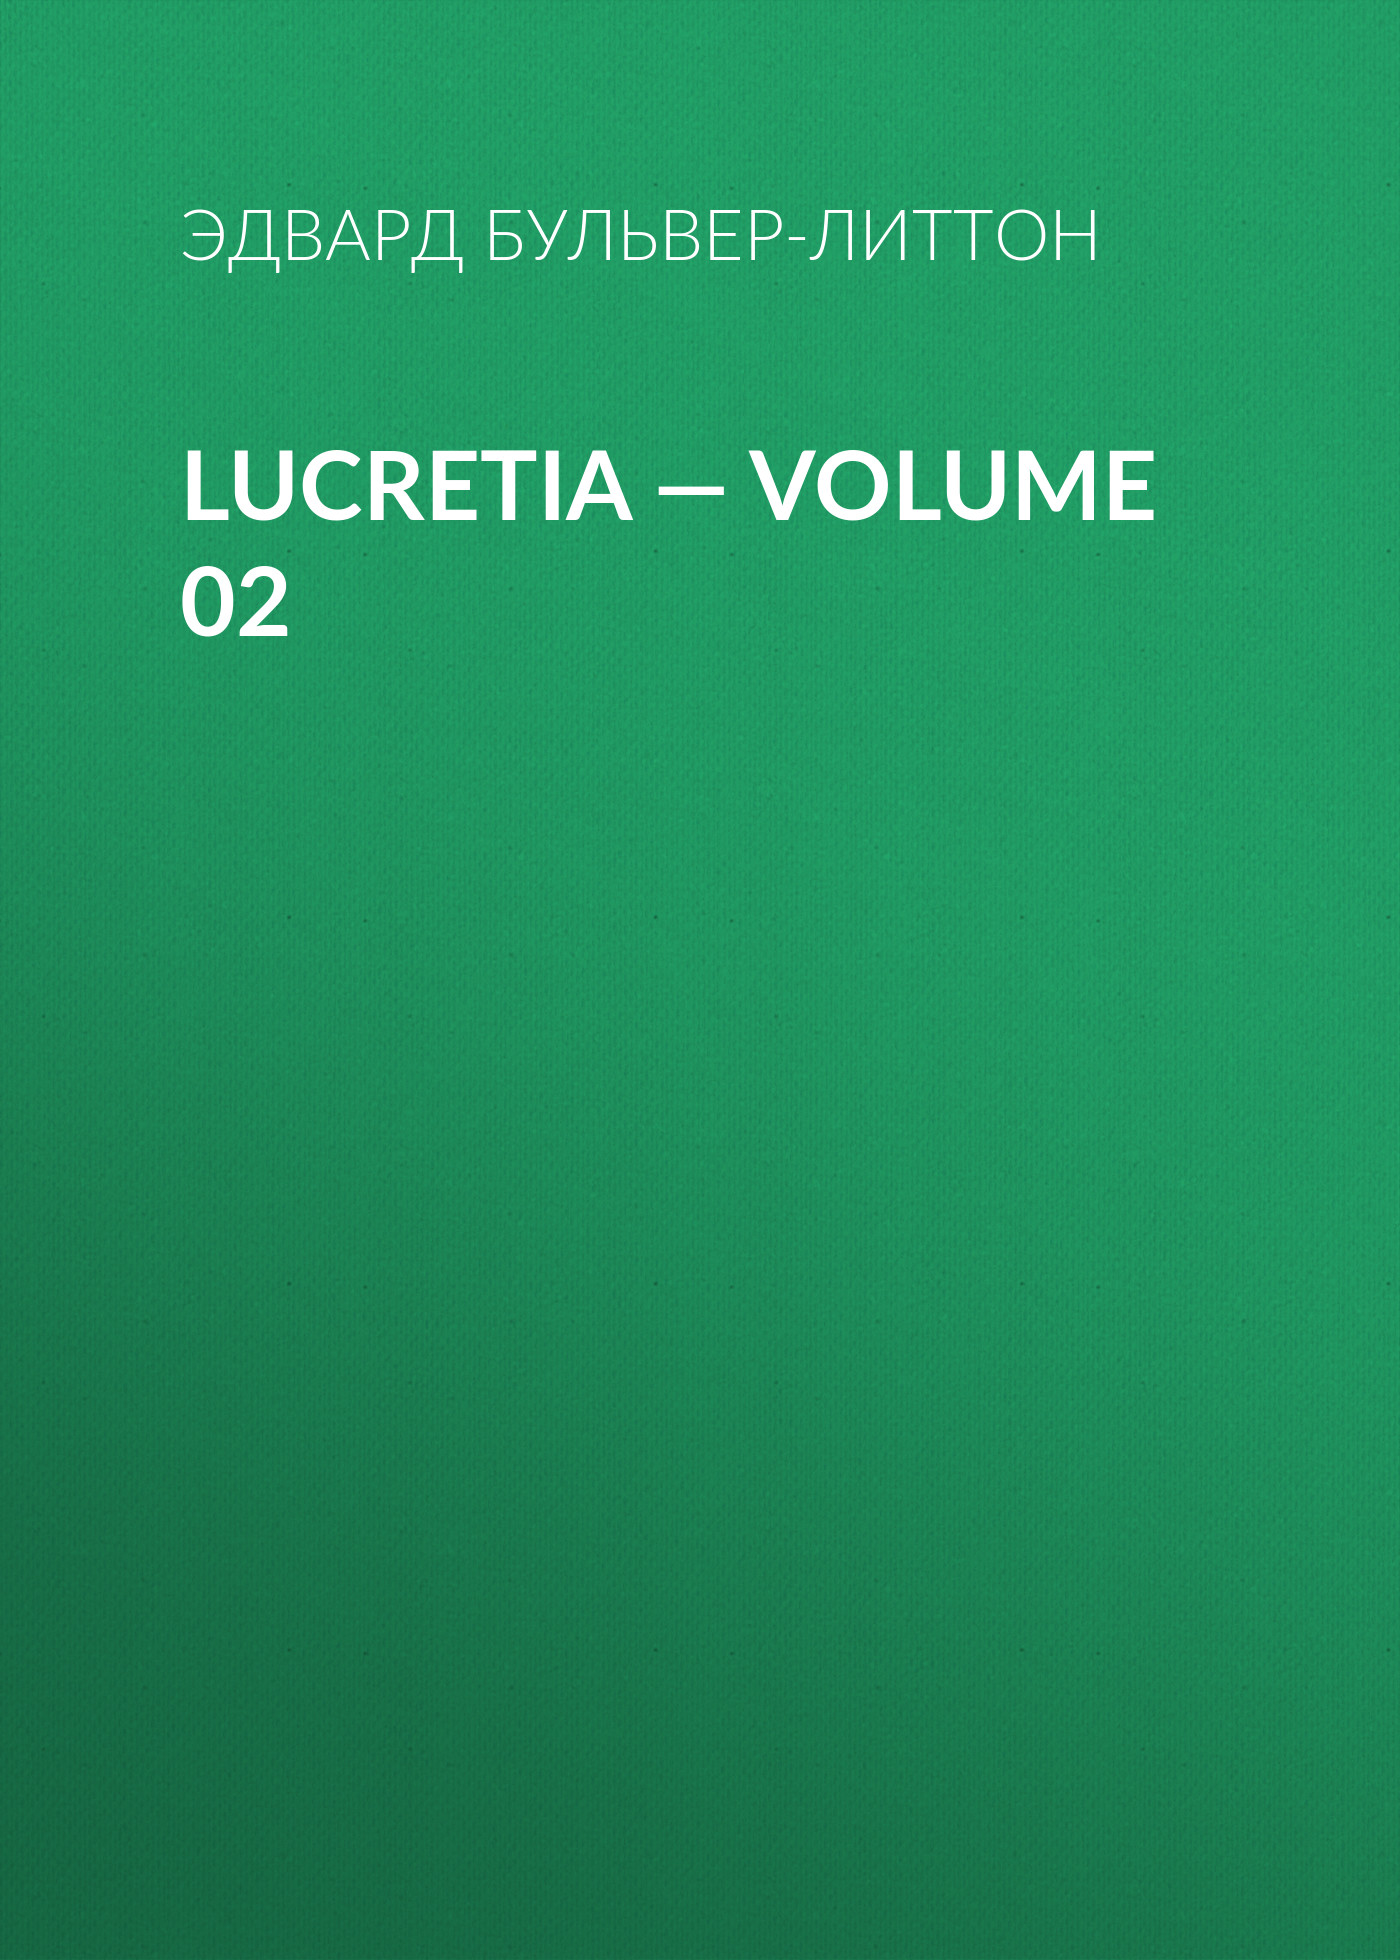 Книга Lucretia – Volume 02 из серии , созданная Эдвард Бульвер-Литтон, может относится к жанру Литература 19 века, Зарубежные детективы. Стоимость электронной книги Lucretia – Volume 02 с идентификатором 35009033 составляет 0 руб.